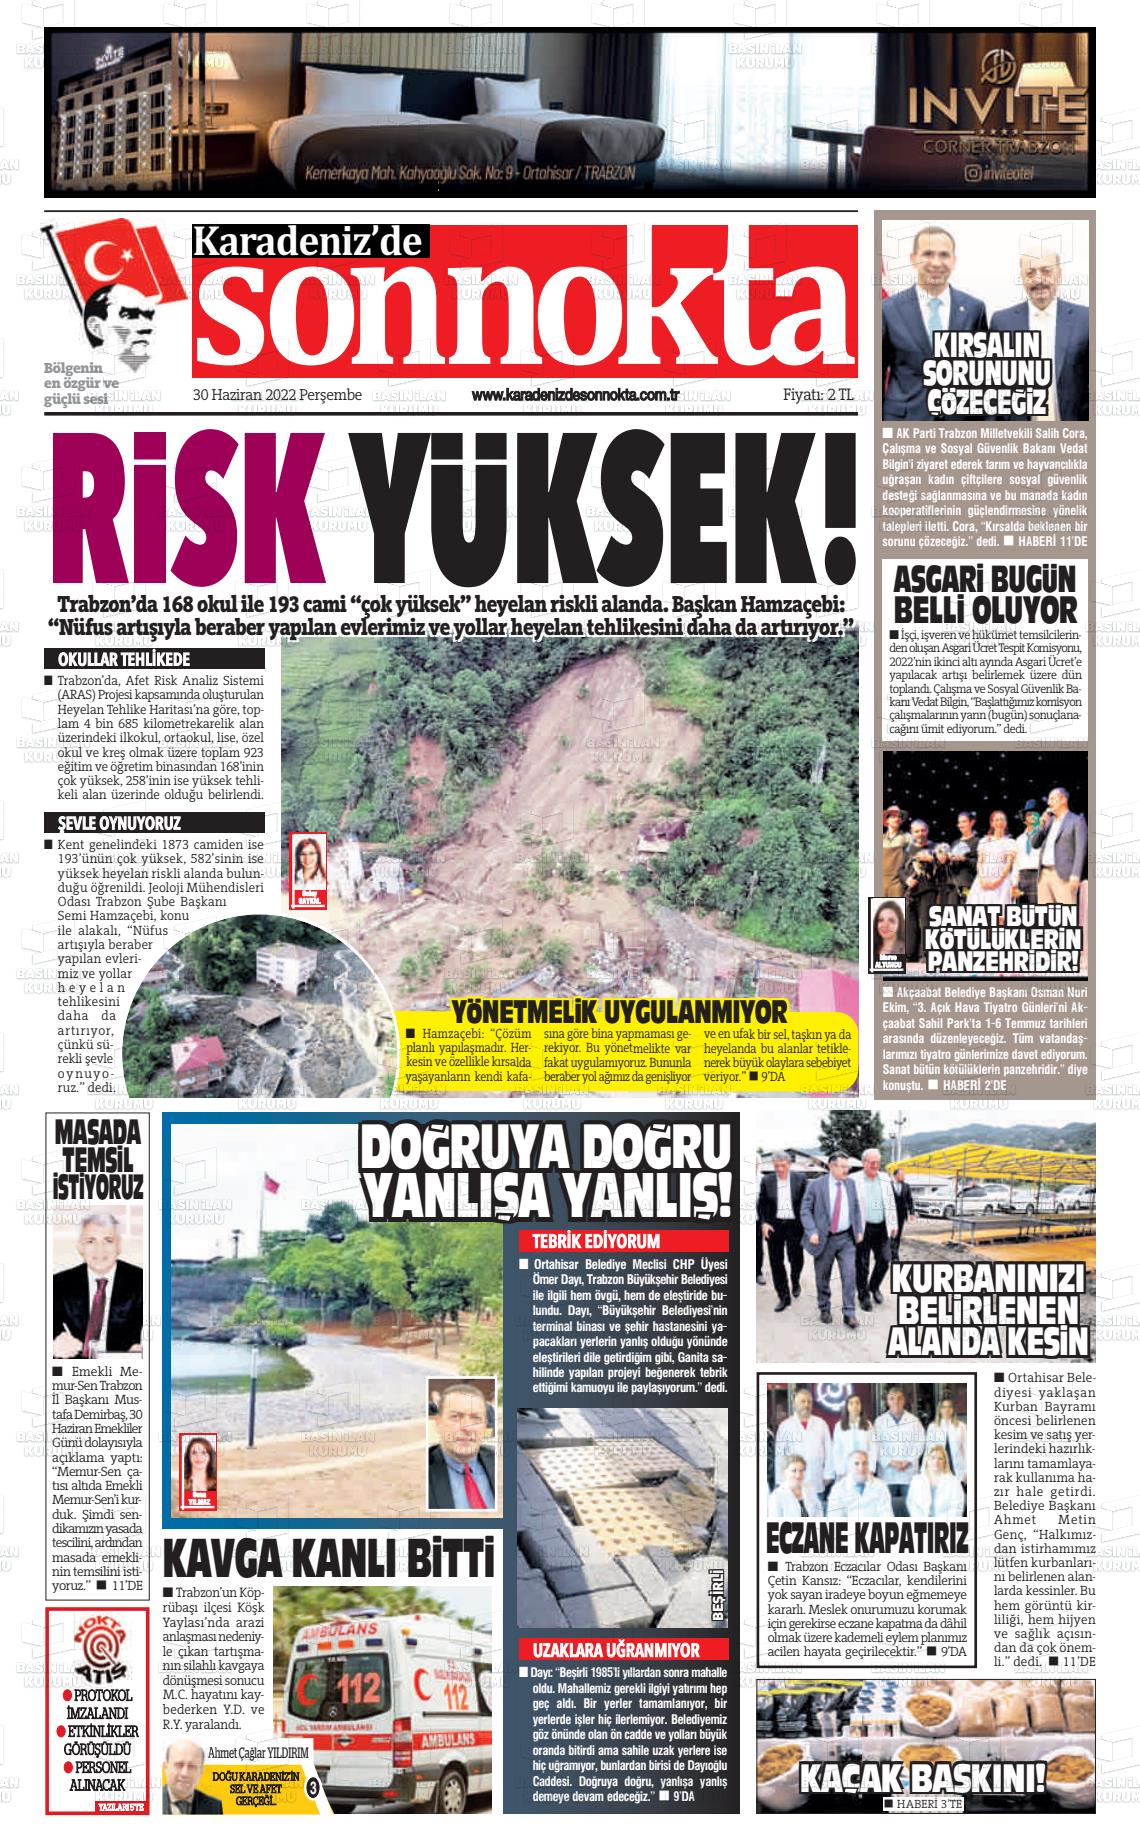 02 Temmuz 2022 Karadeniz'de Sonnokta Gazete Manşeti